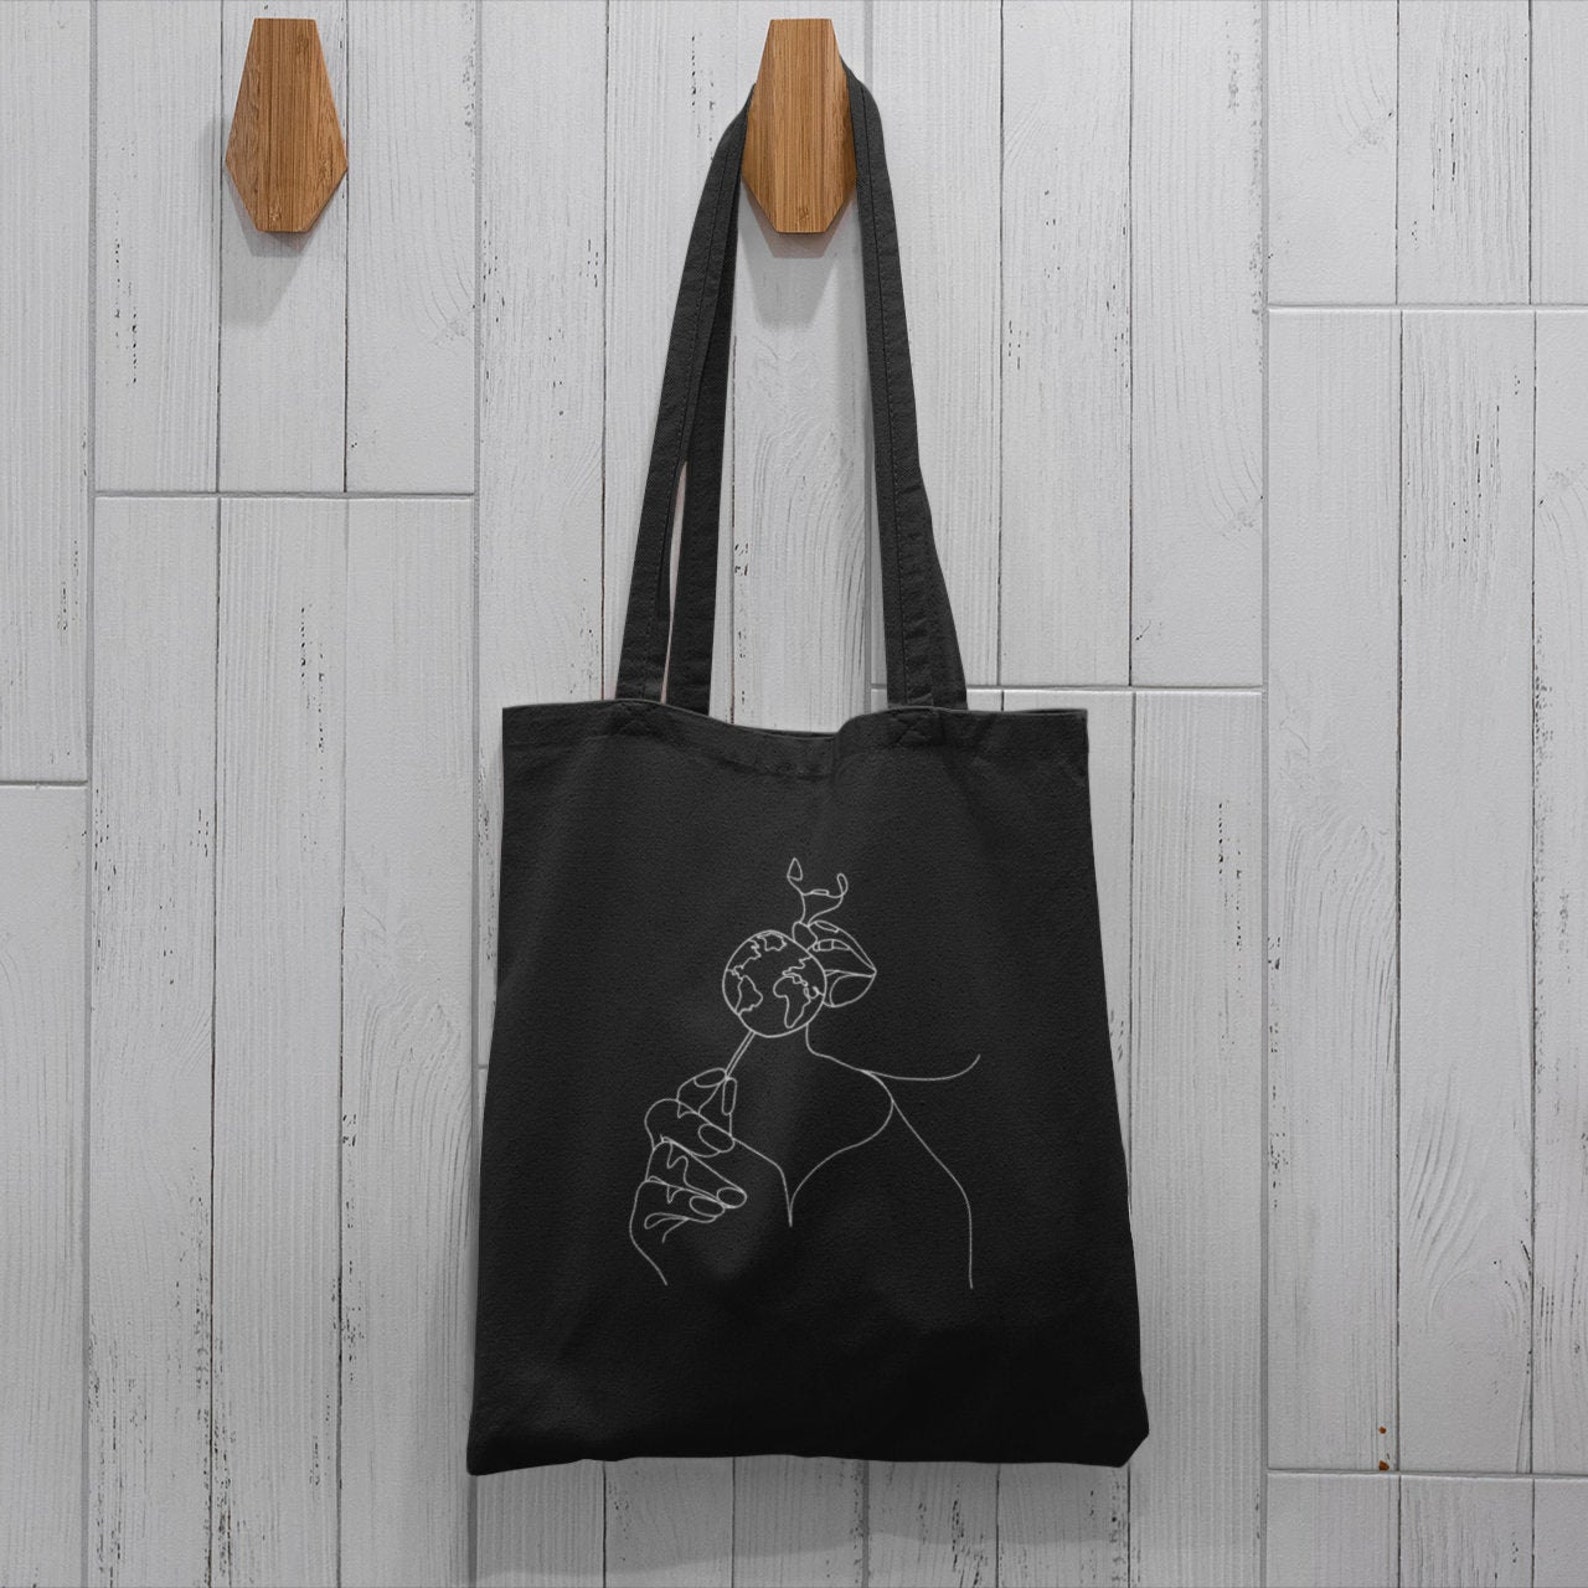 Tota bag black Line Art Canvas tote bag shoulder bag | Etsy